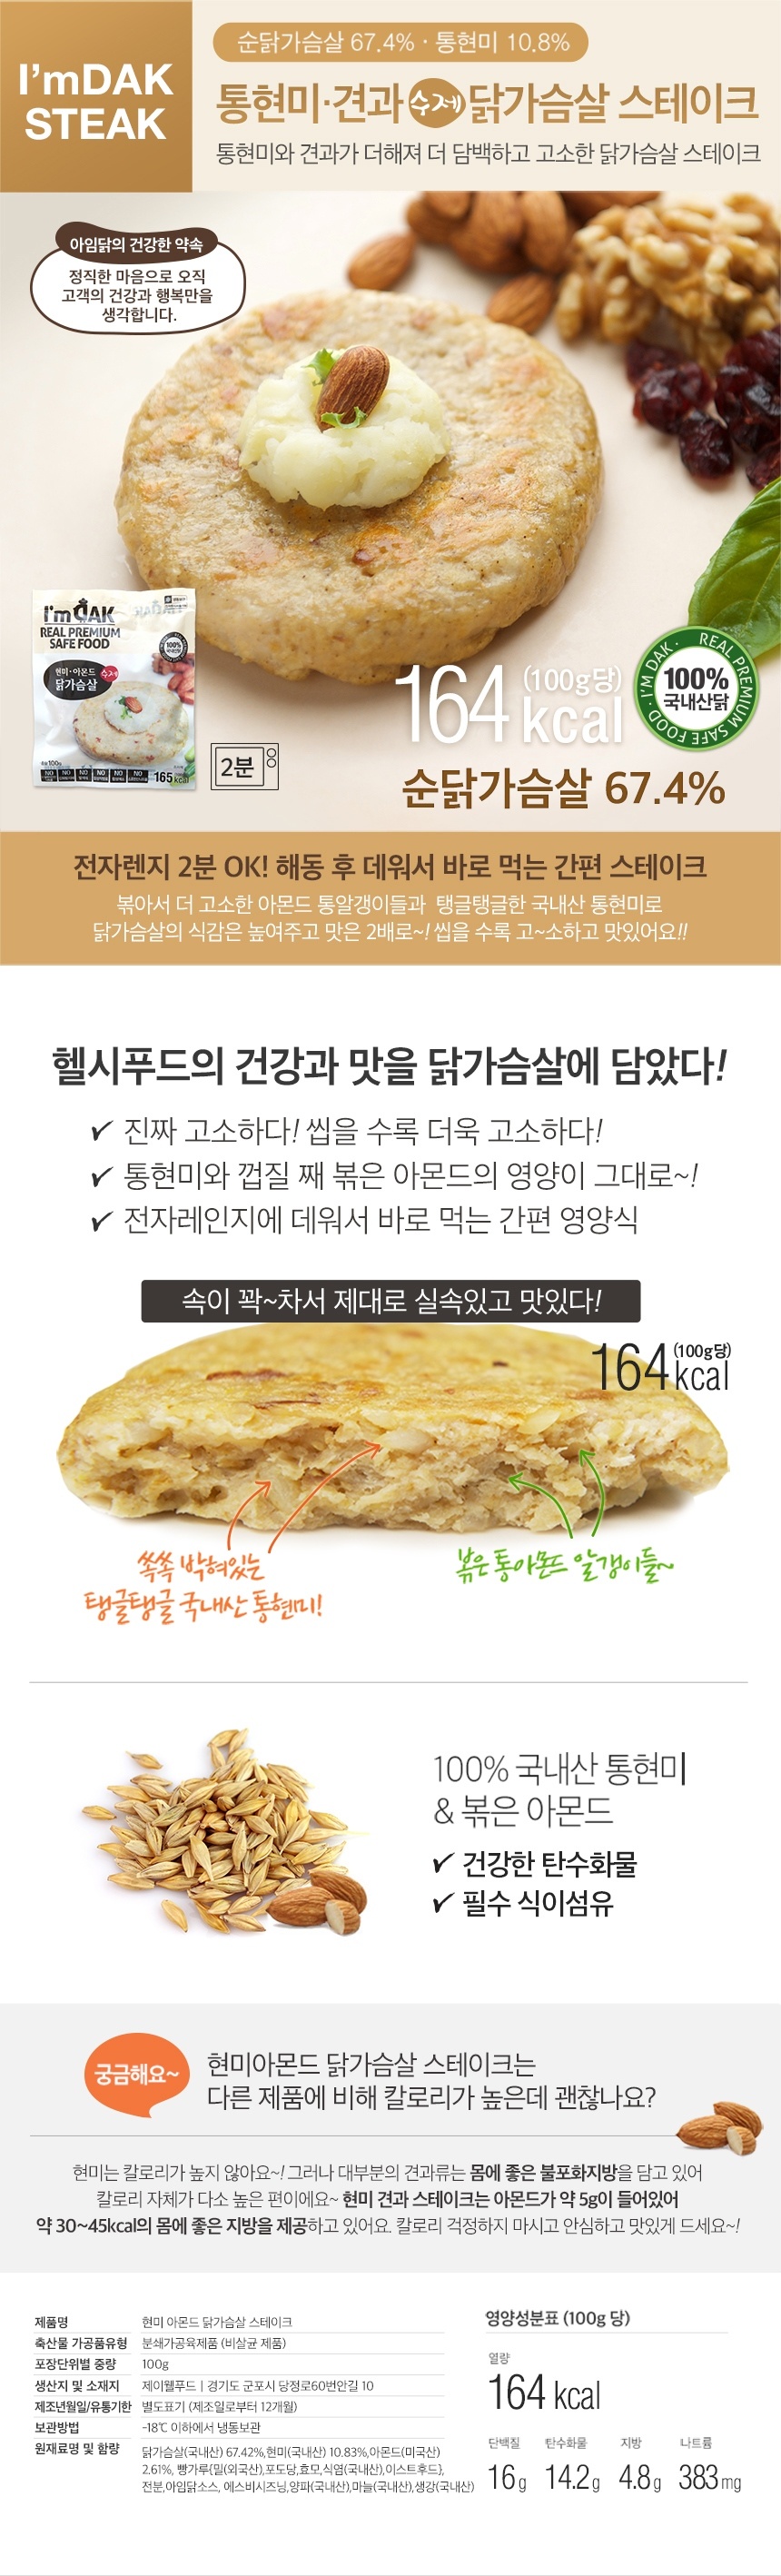 아임닭  닭가슴살 스테이크&소시지 체험단 모집(8.18~8.27)